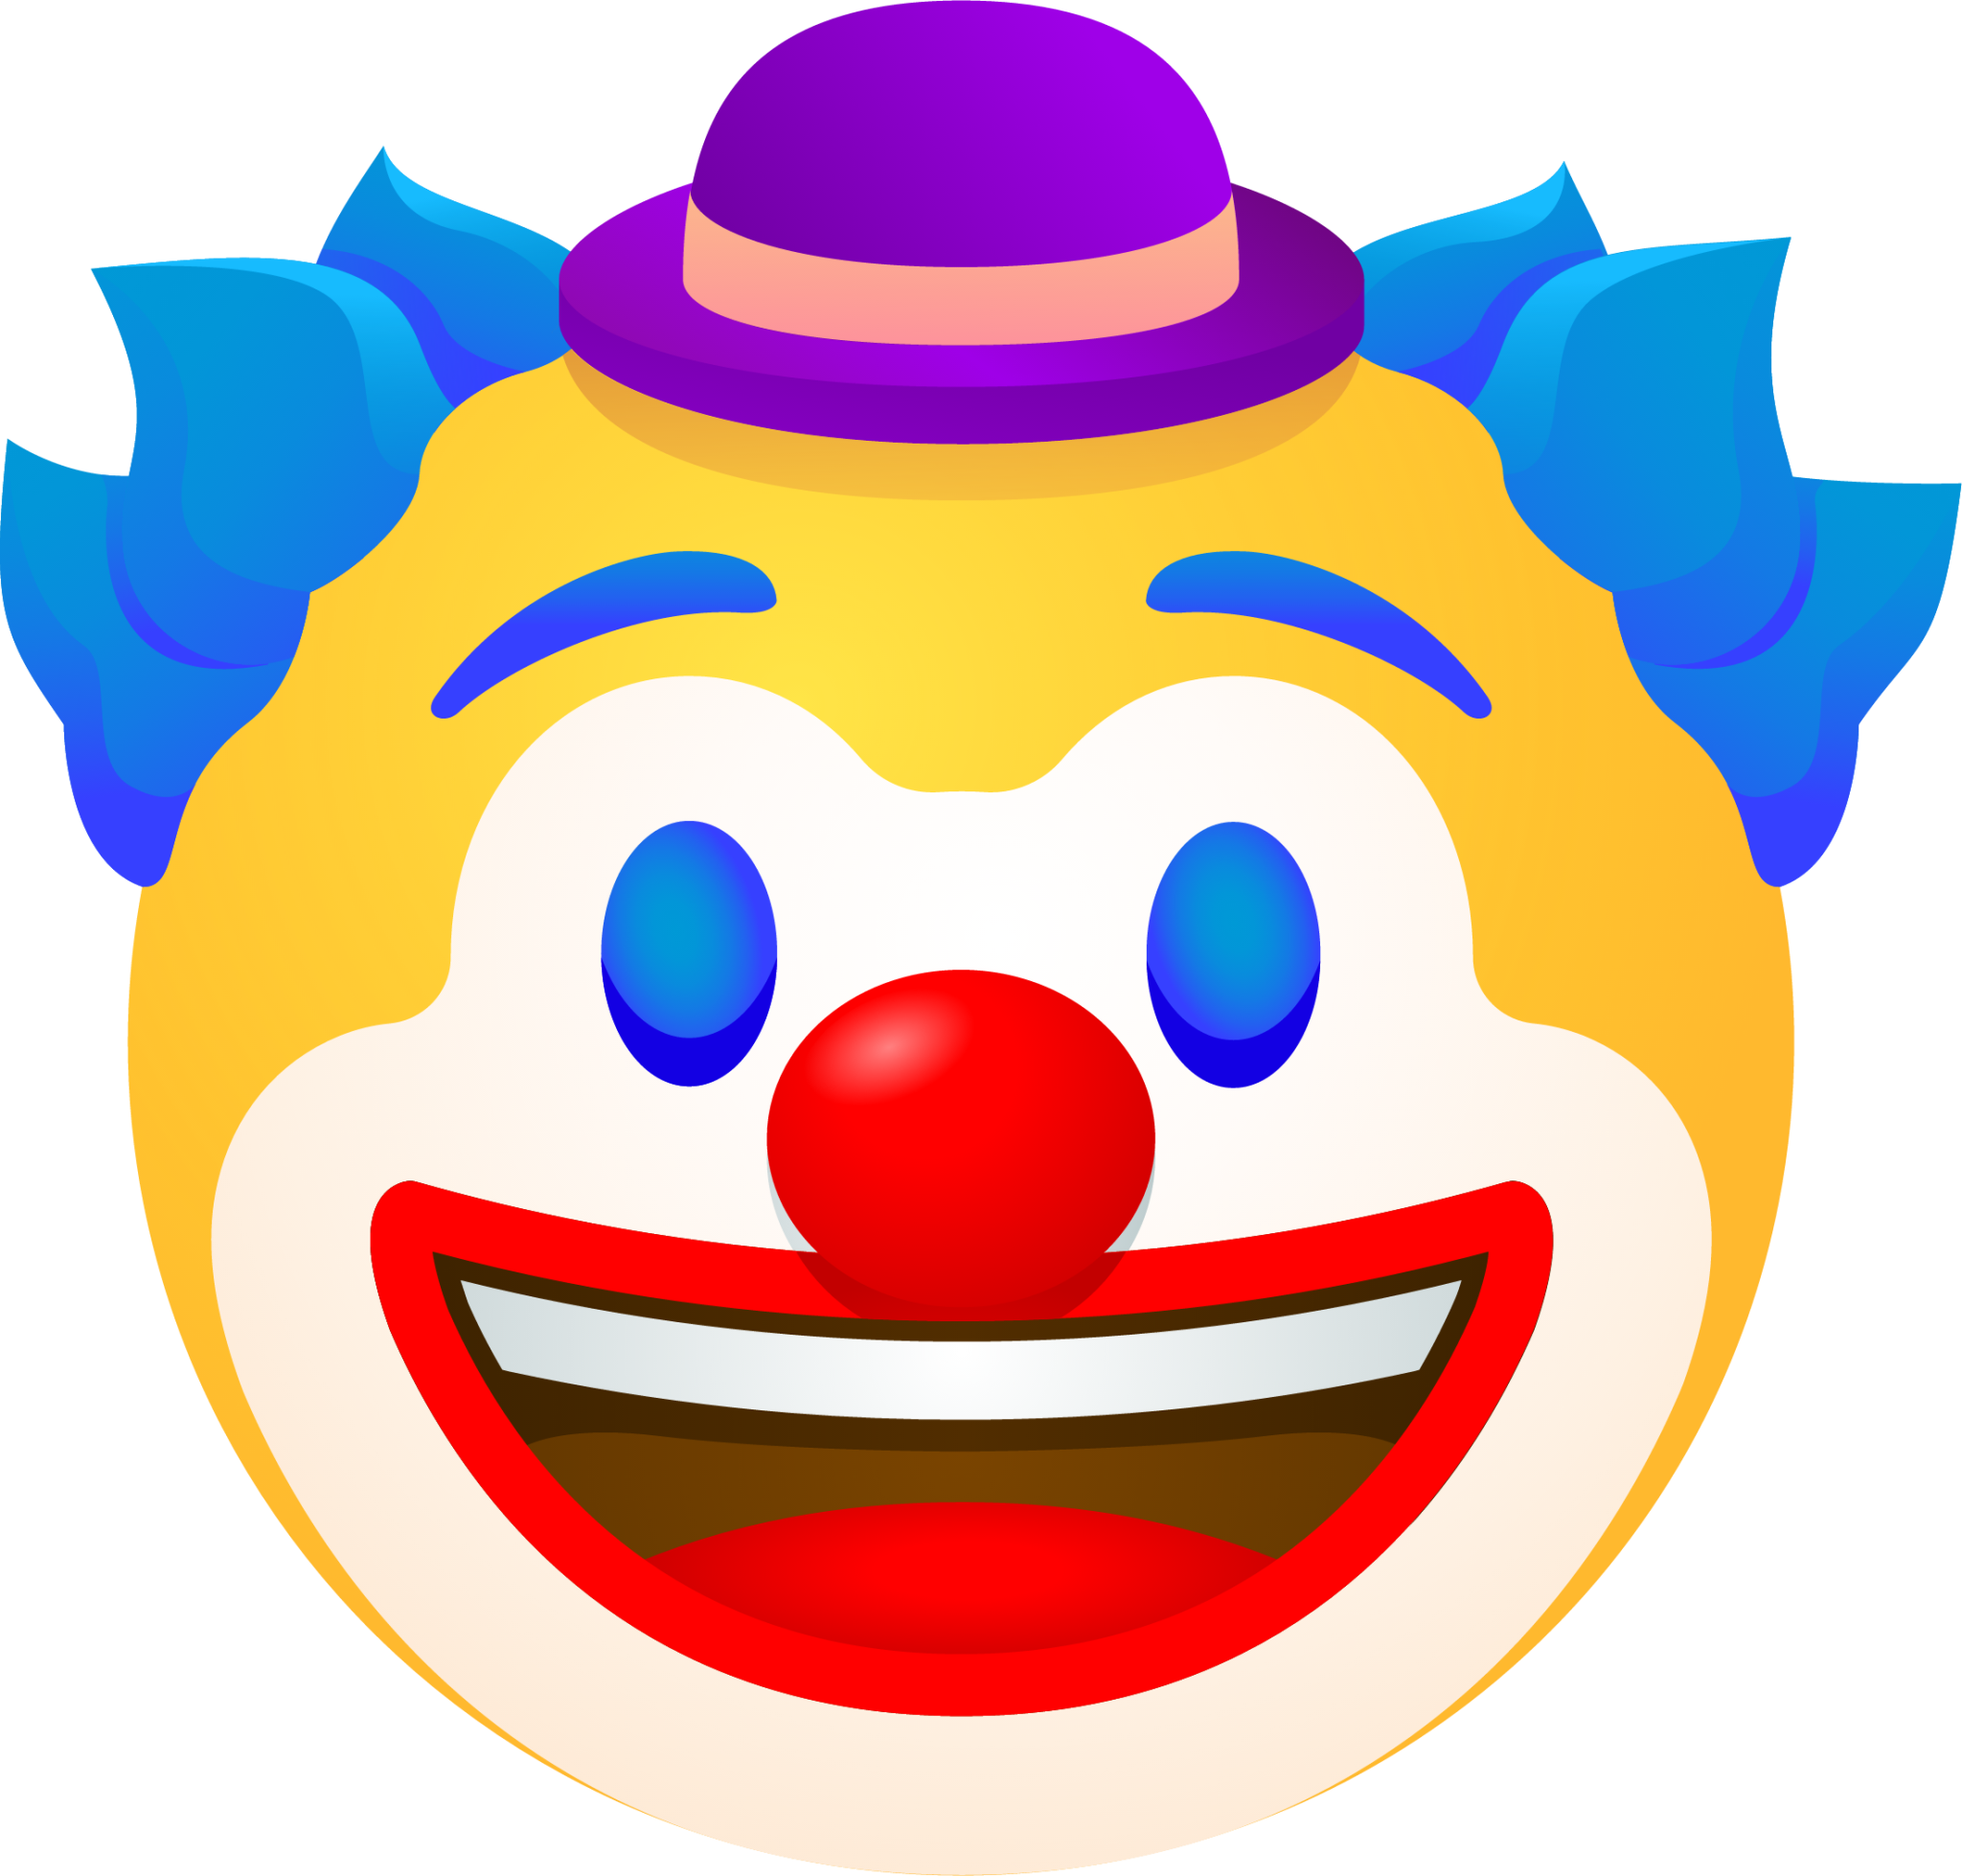 Clown face emoji emoji